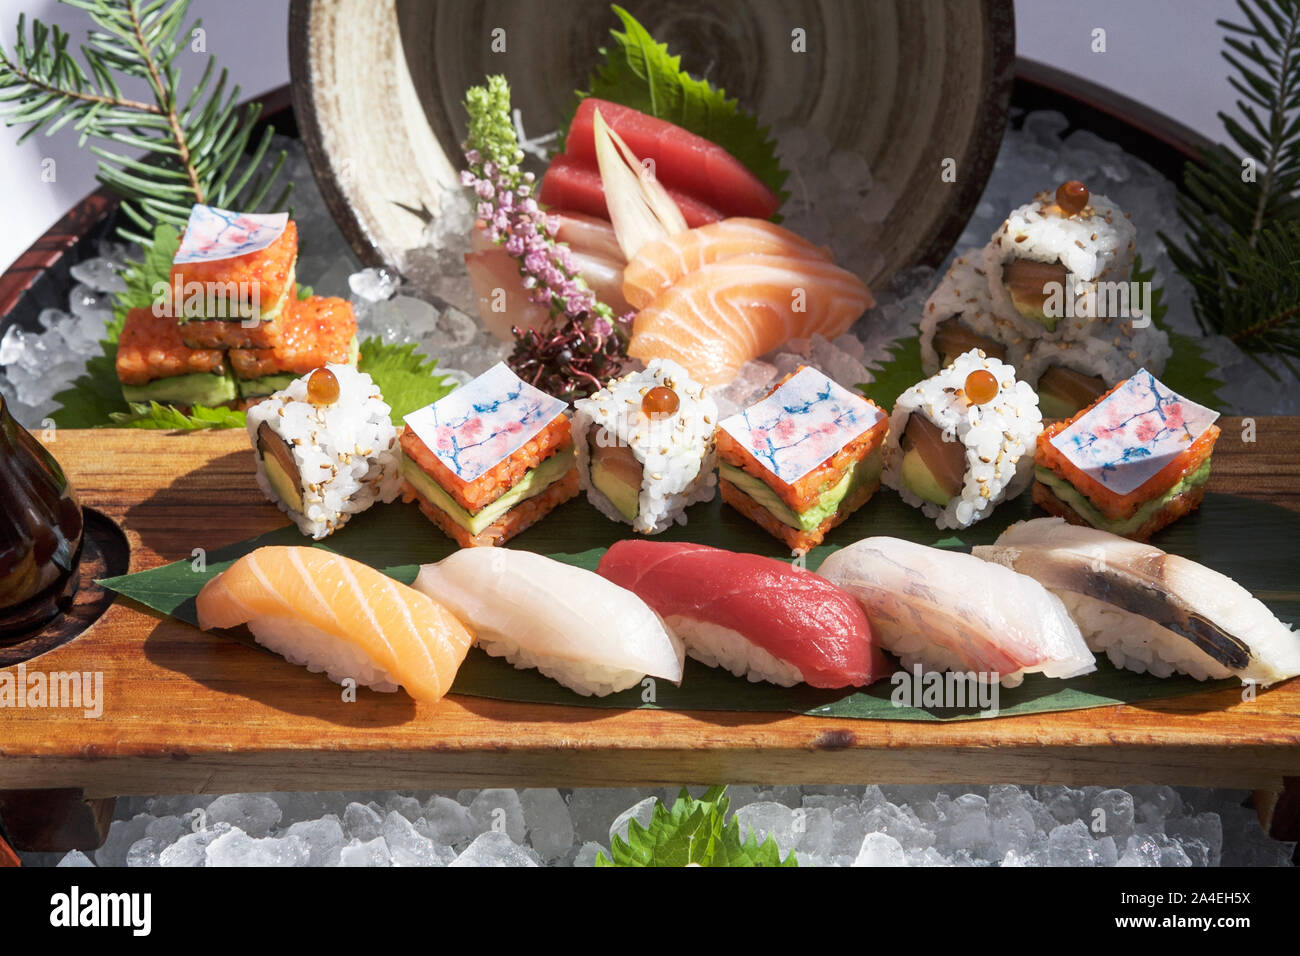 La comida tradicional japonesa, el sushi. La comida asiática. Cocina Japonesa. La comida japonesa. Fotografía de alimentos. La cultura japonesa de alimentos. Foto de stock